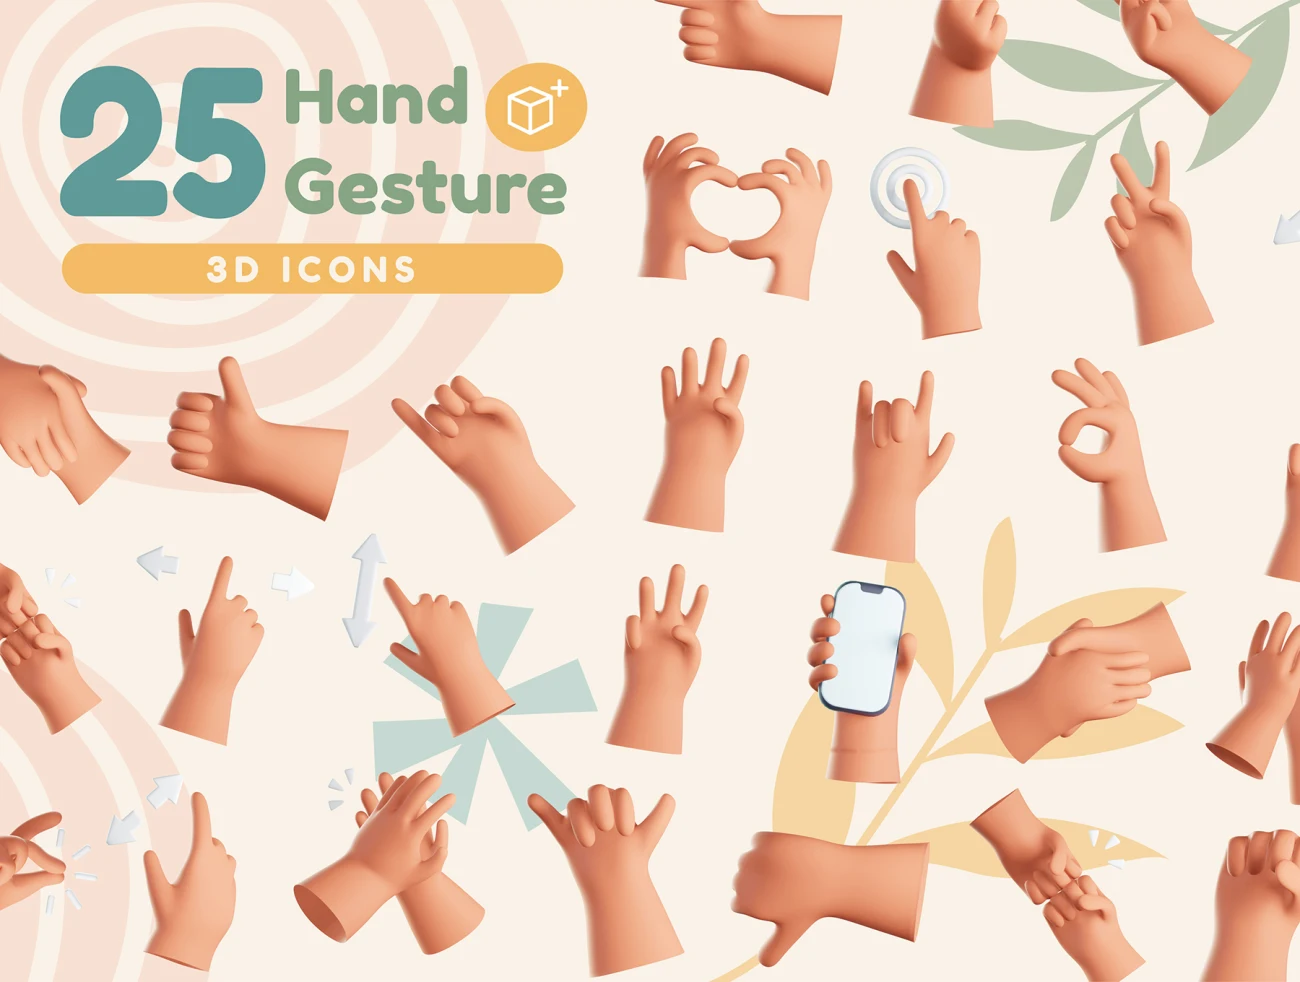 25款可爱3D手势交互样机模型 Hands Gesture 3D Icons .blender .psd插图1